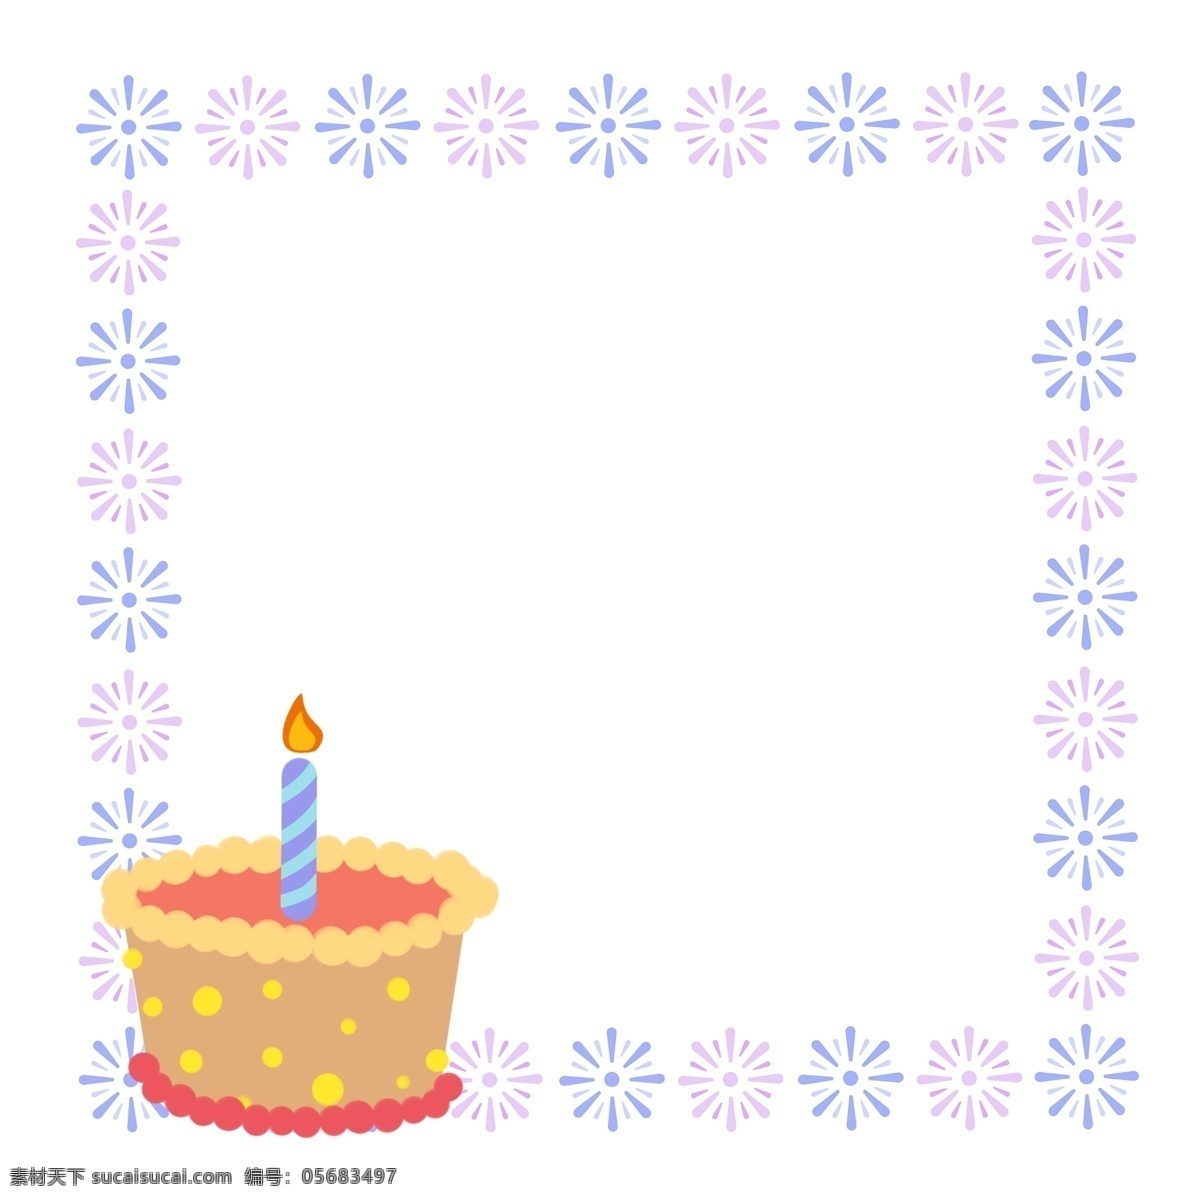 生日蛋糕 蜡烛 边框 燃烧的蜡烛 卡通边框 小物边框 物品边框 漂亮边框 美丽边框 生日的边框